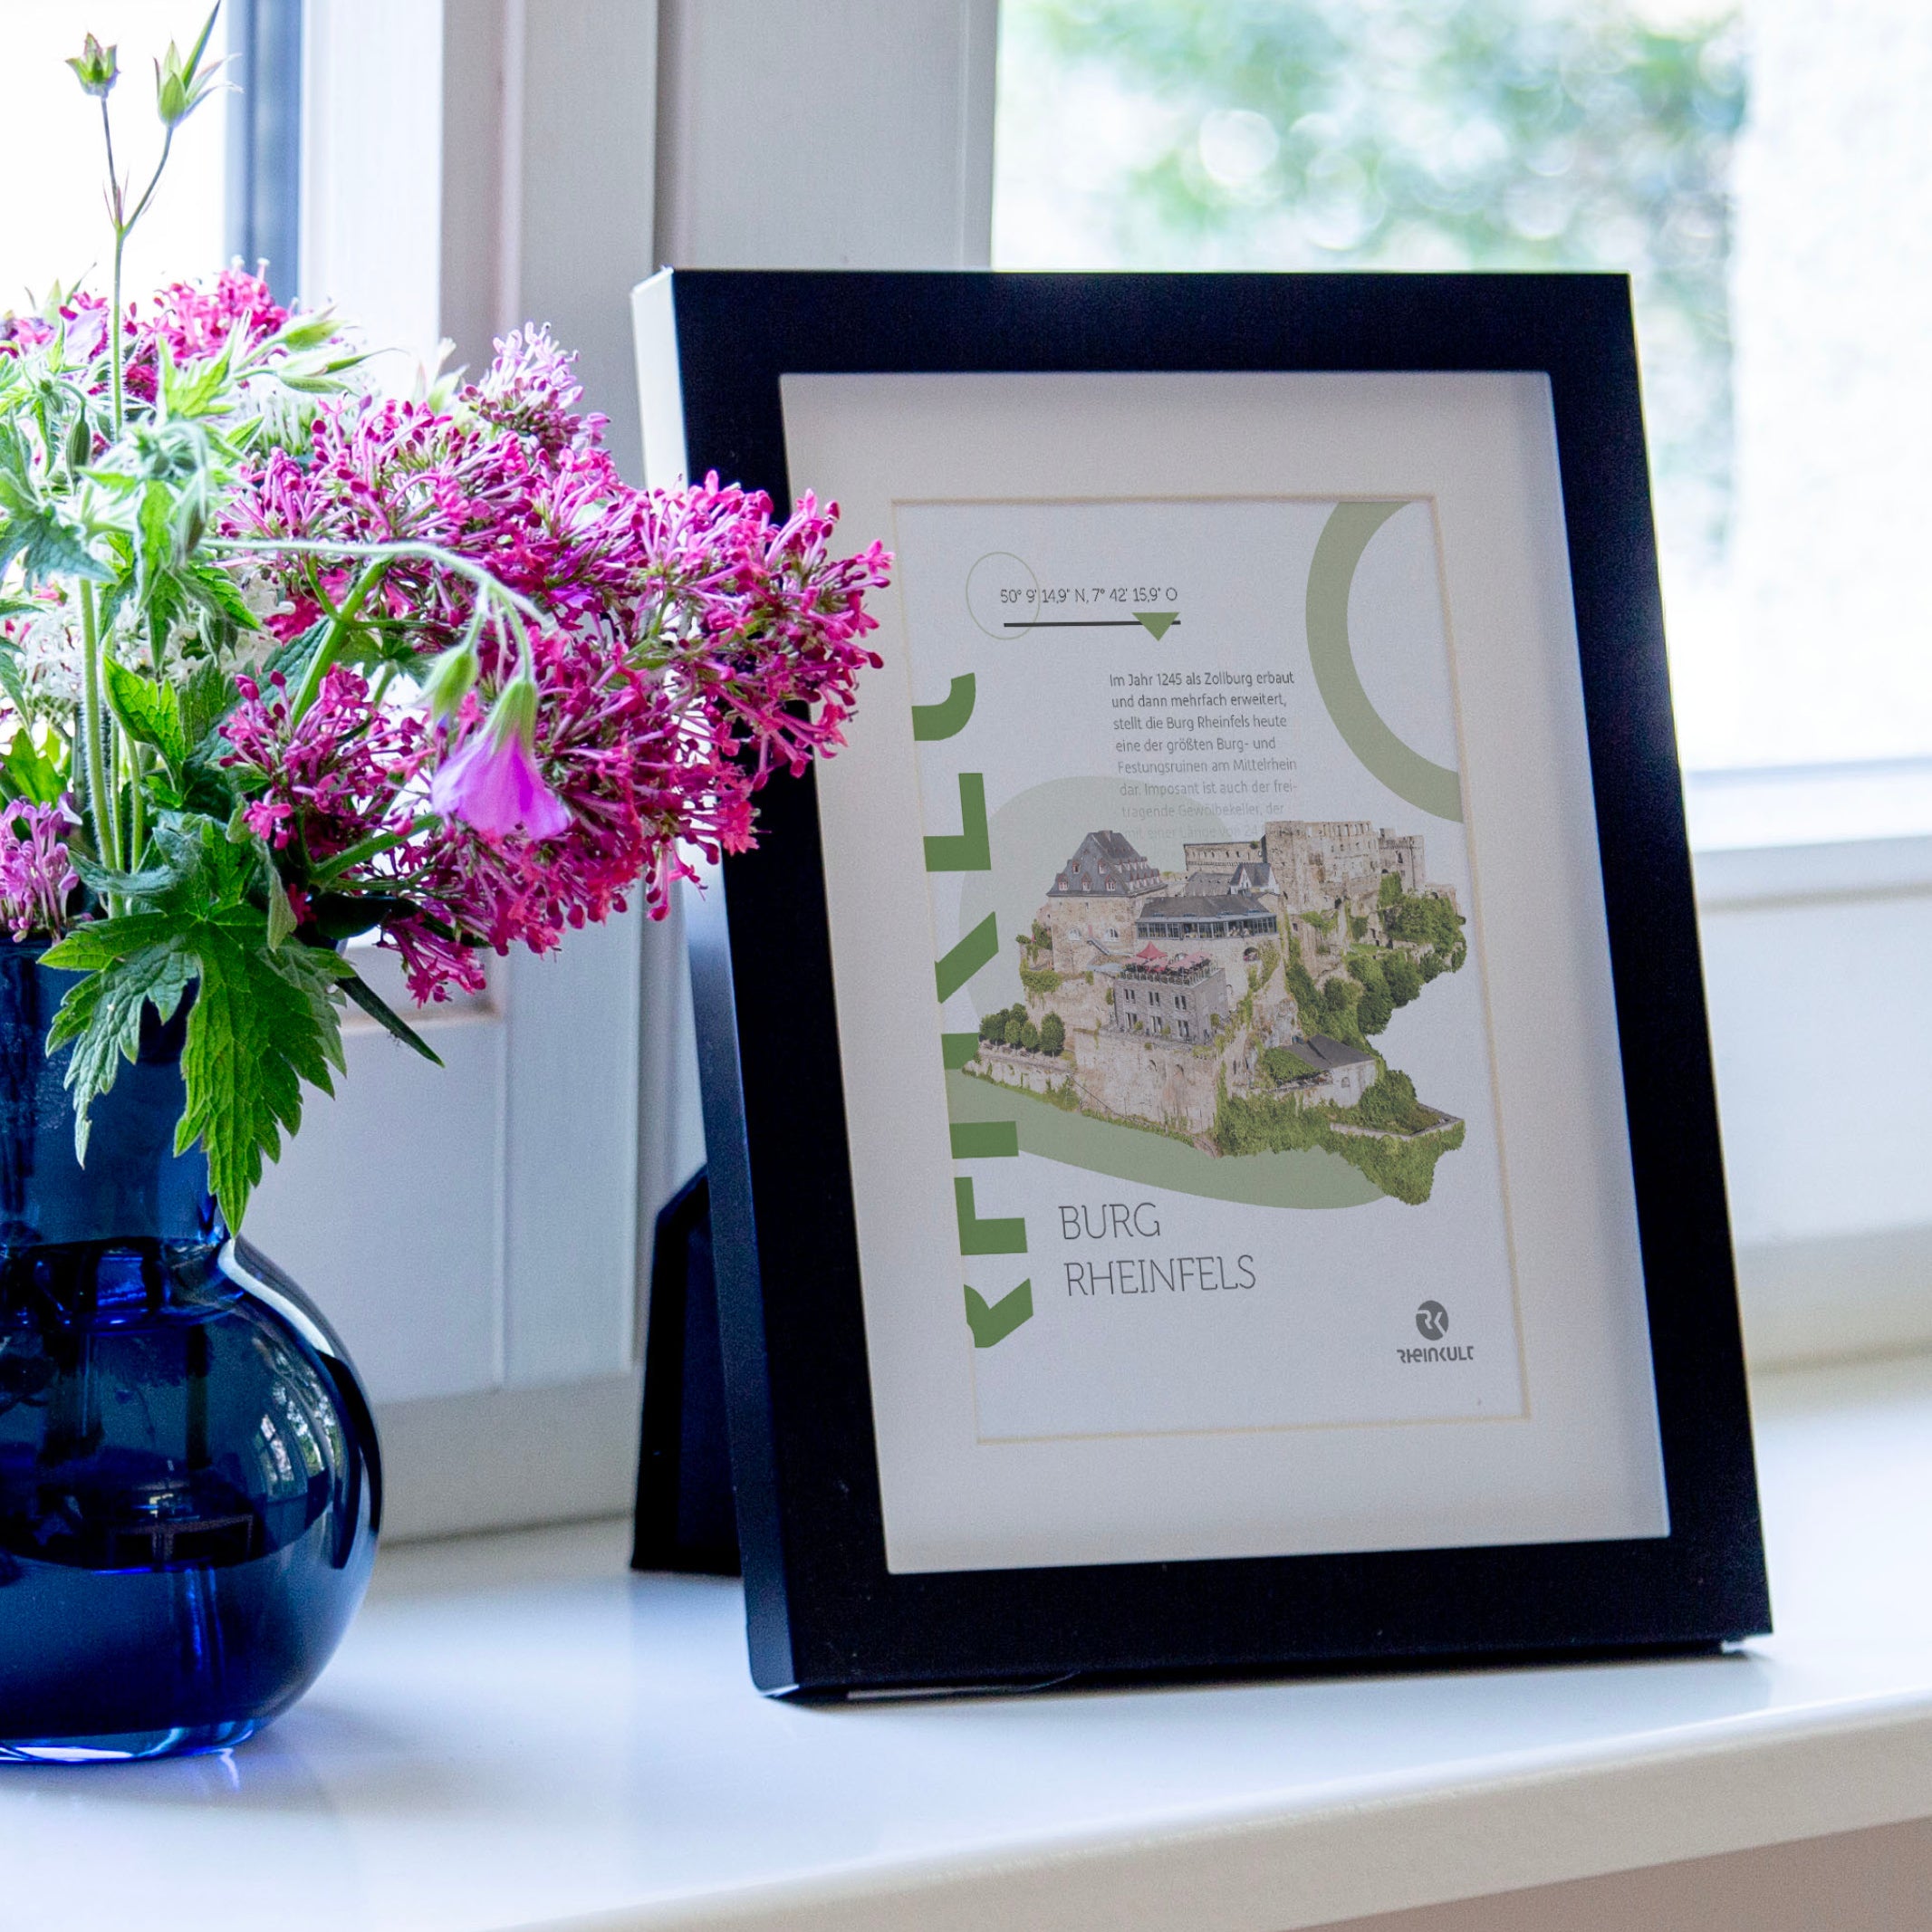 Auf einer Fensterbank steht ein Bilderrahmen mit der Postkarte „Burg Rheinfels“ neben einem kleinen Blumenstrauß.